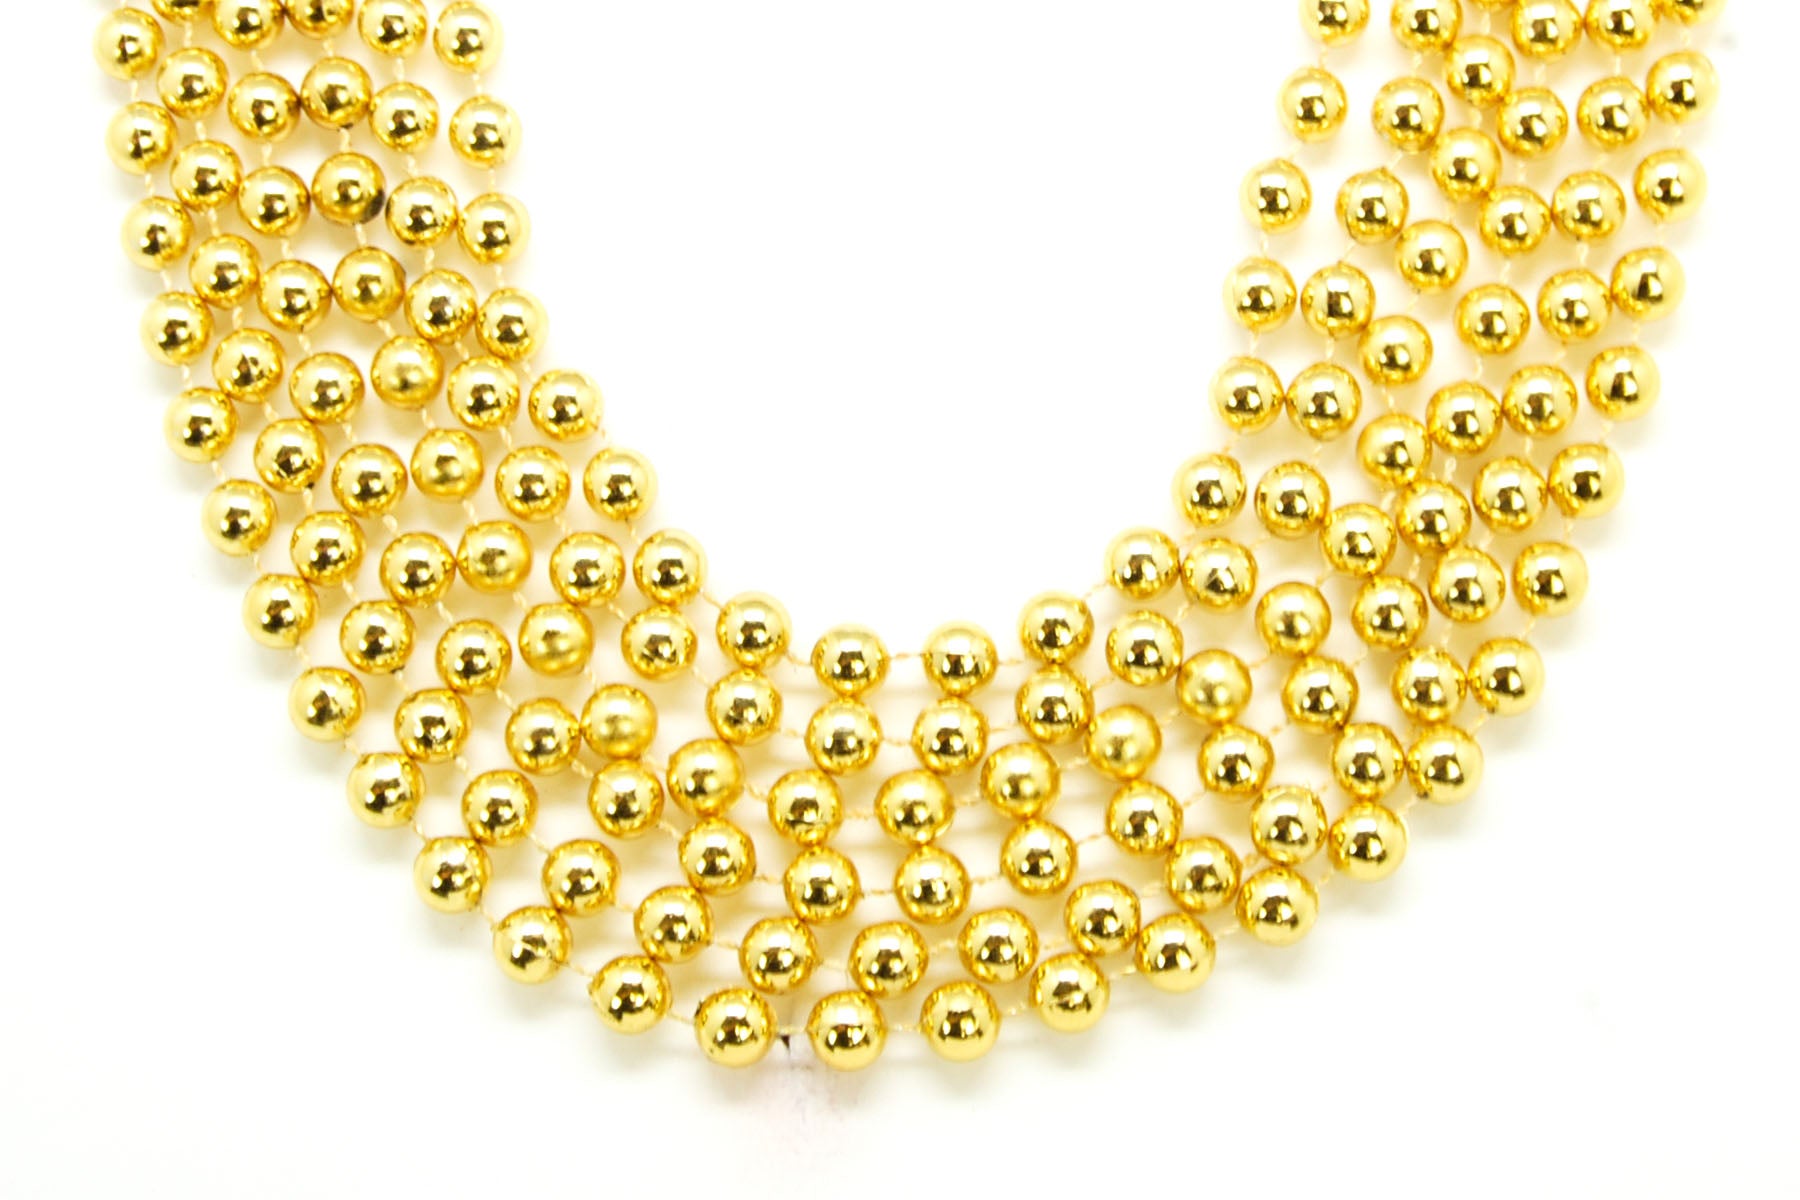 42 10mm Round Gold Beads